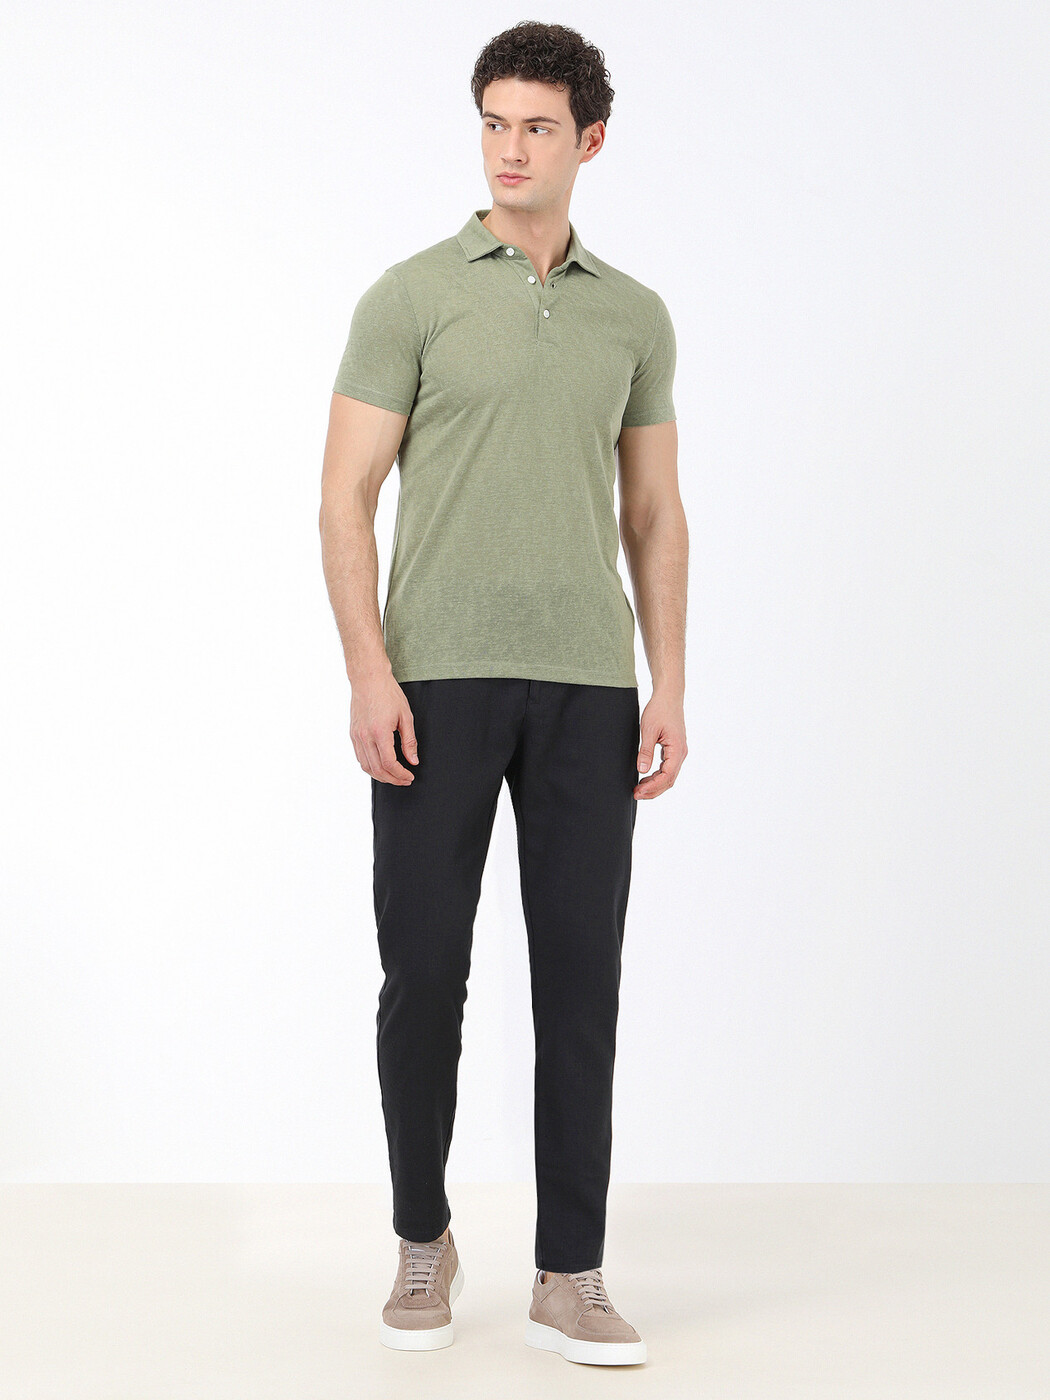 KİP - Yeşil Düz Polo Yaka T-Shirt (1)